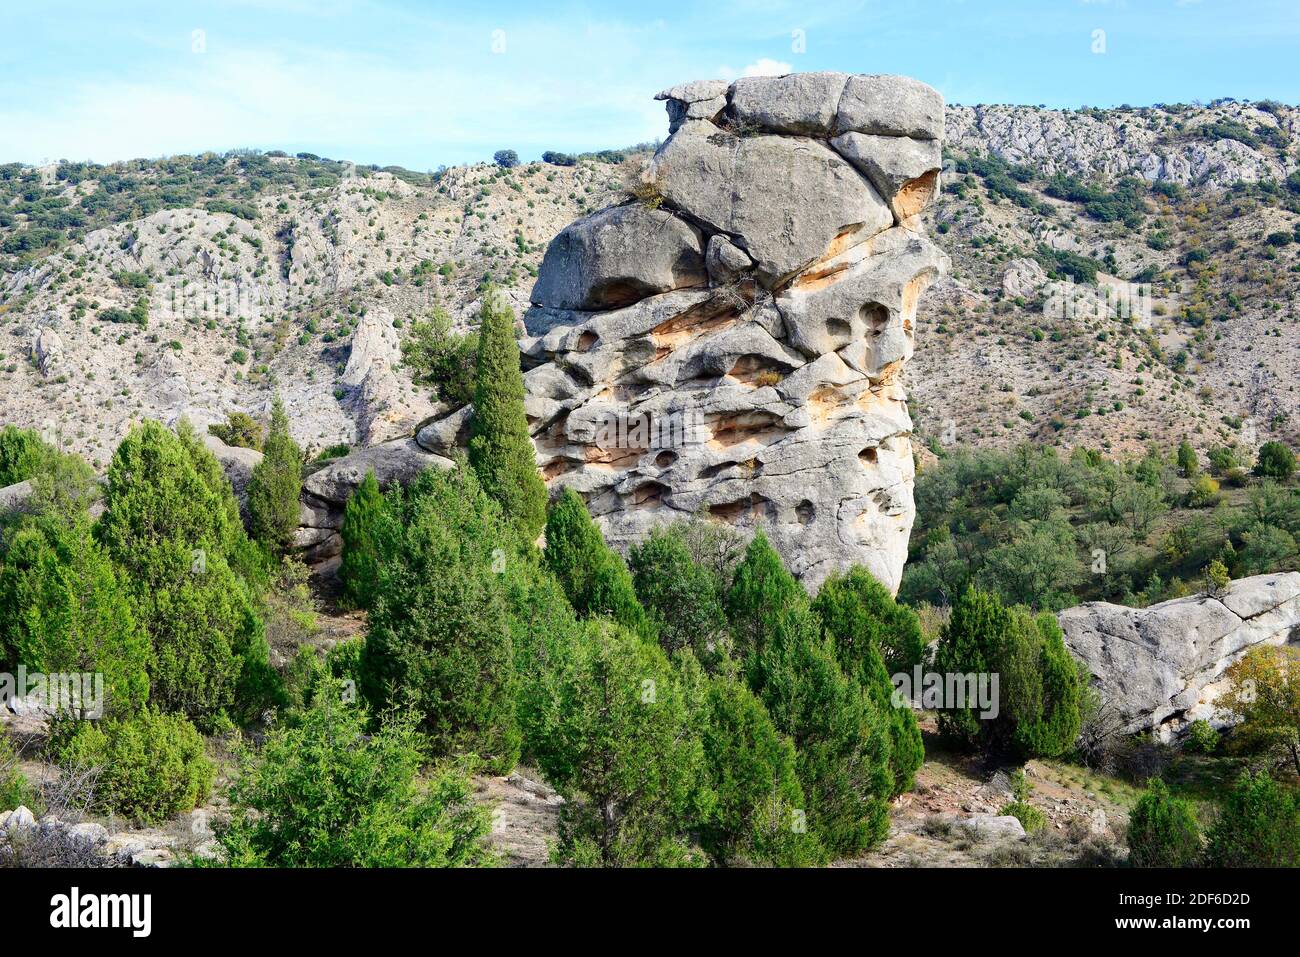 Tafoni in arenaria; i tafoni sono piccole cavità formate nelle rocce per l'erosione degli agenti atmosferici o differenziali. Miravete de la Sierra, Teruel, Aragona, Foto Stock